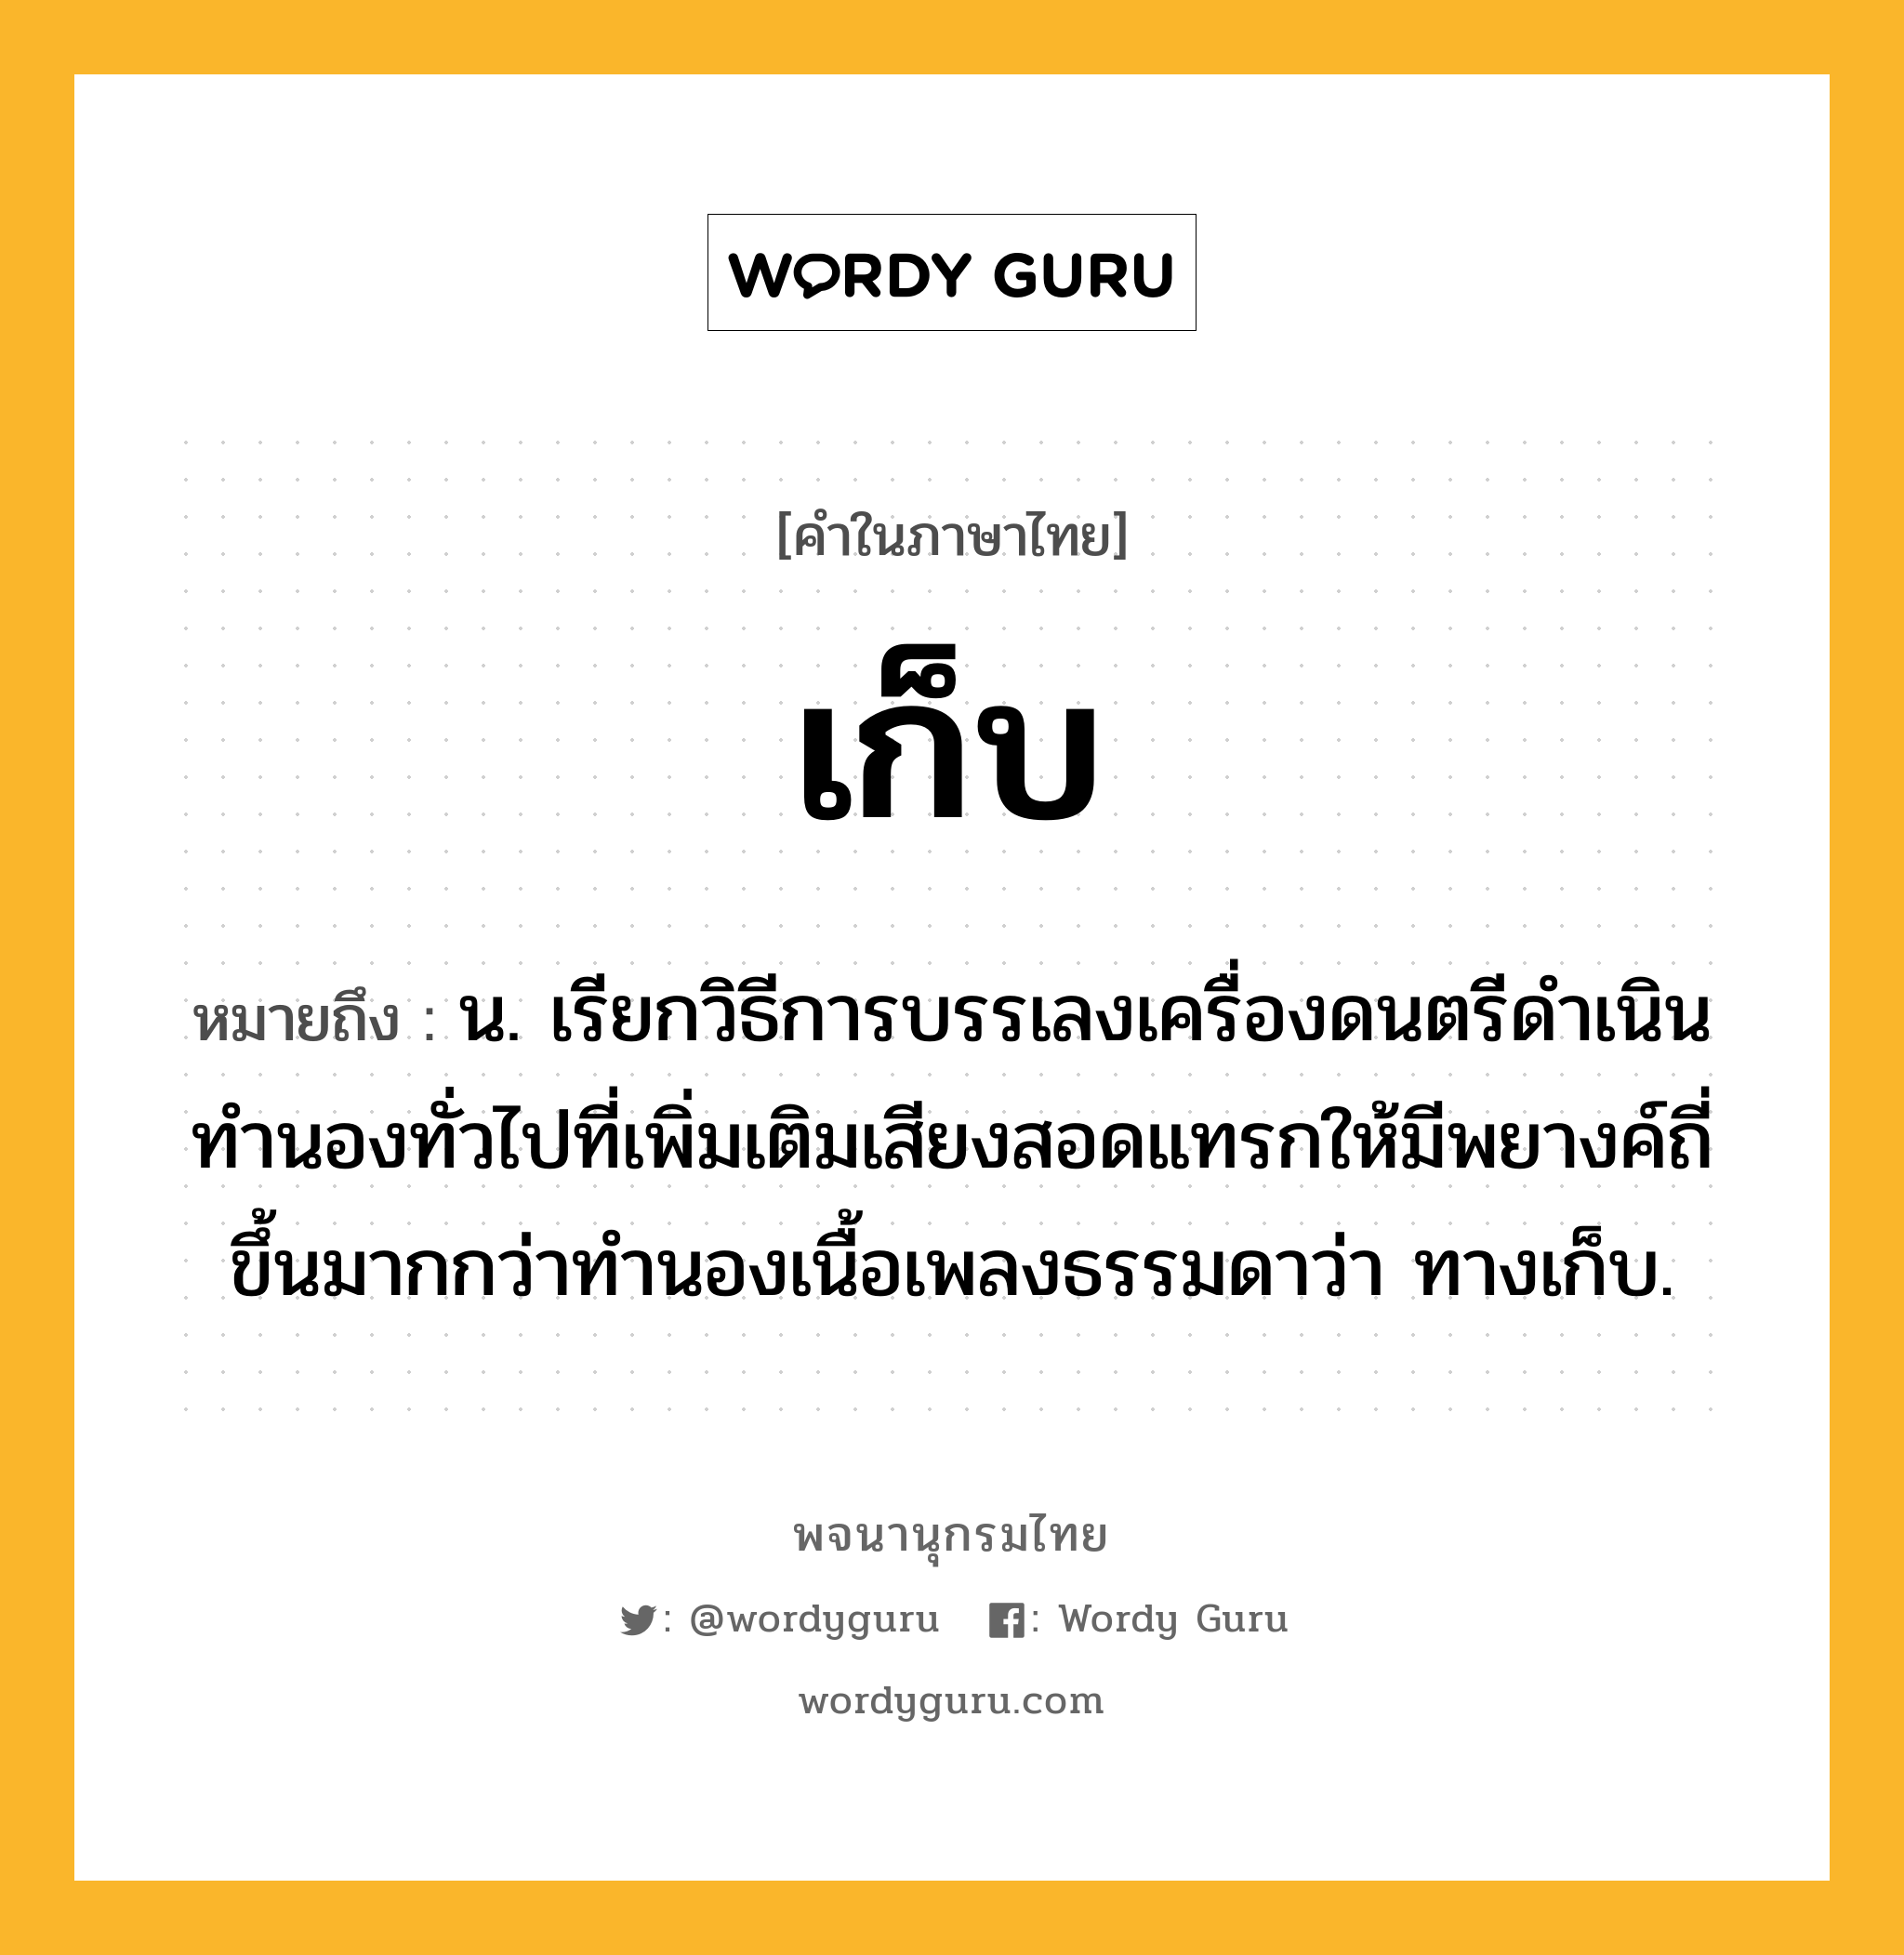 เก็บ ความหมาย หมายถึงอะไร?, คำในภาษาไทย เก็บ หมายถึง น. เรียกวิธีการบรรเลงเครื่องดนตรีดำเนินทำนองทั่วไปที่เพิ่มเติมเสียงสอดแทรกให้มีพยางค์ถี่ขึ้นมากกว่าทำนองเนื้อเพลงธรรมดาว่า ทางเก็บ.